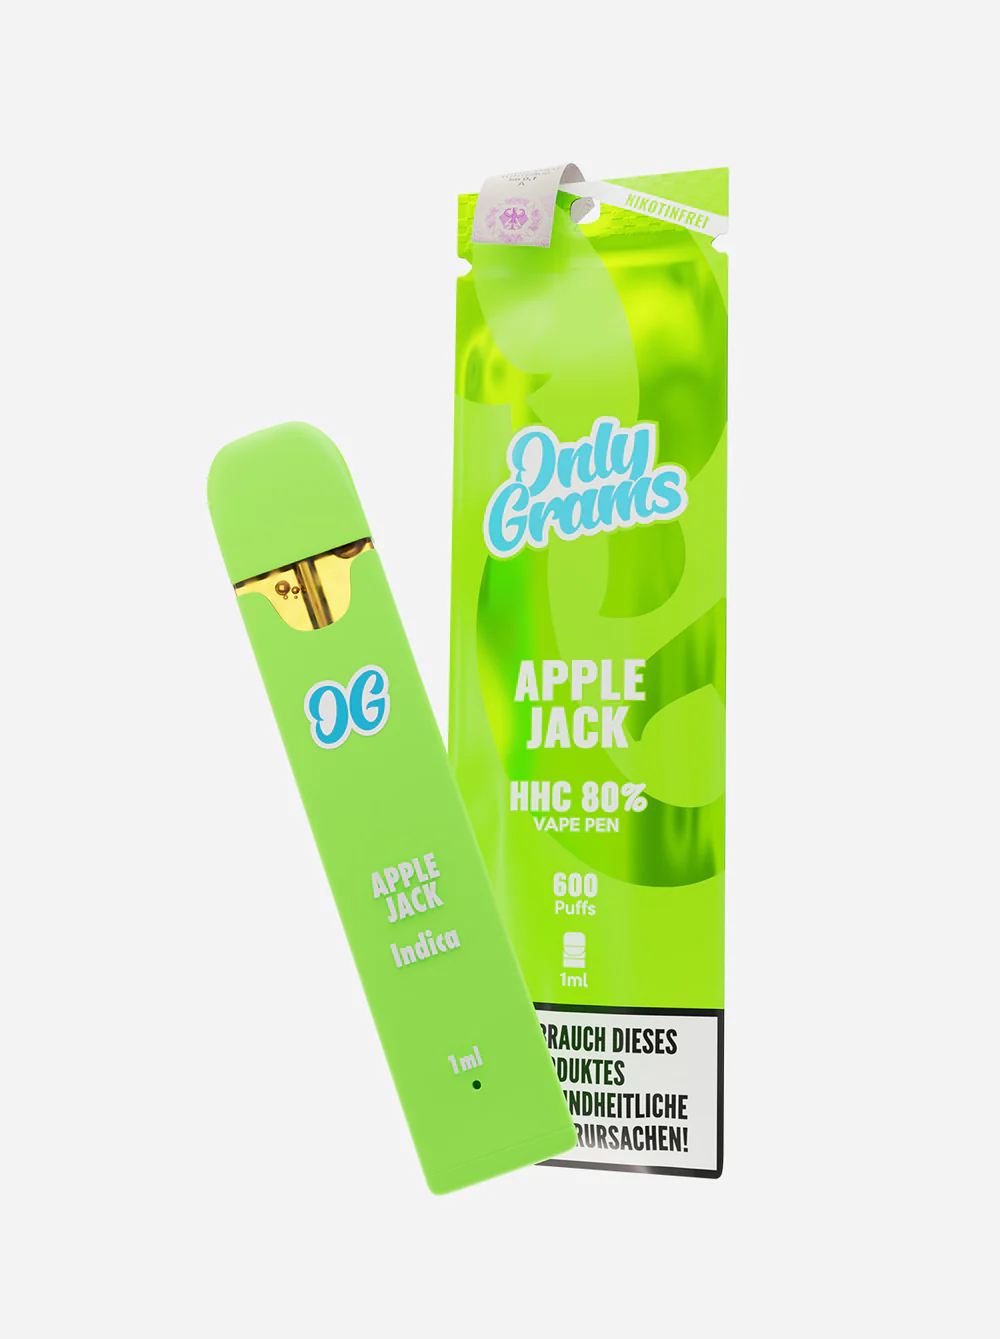 Only Grams - HHC Einweg E-Zigarette (600 Züge) - Apple Jack - 1ml